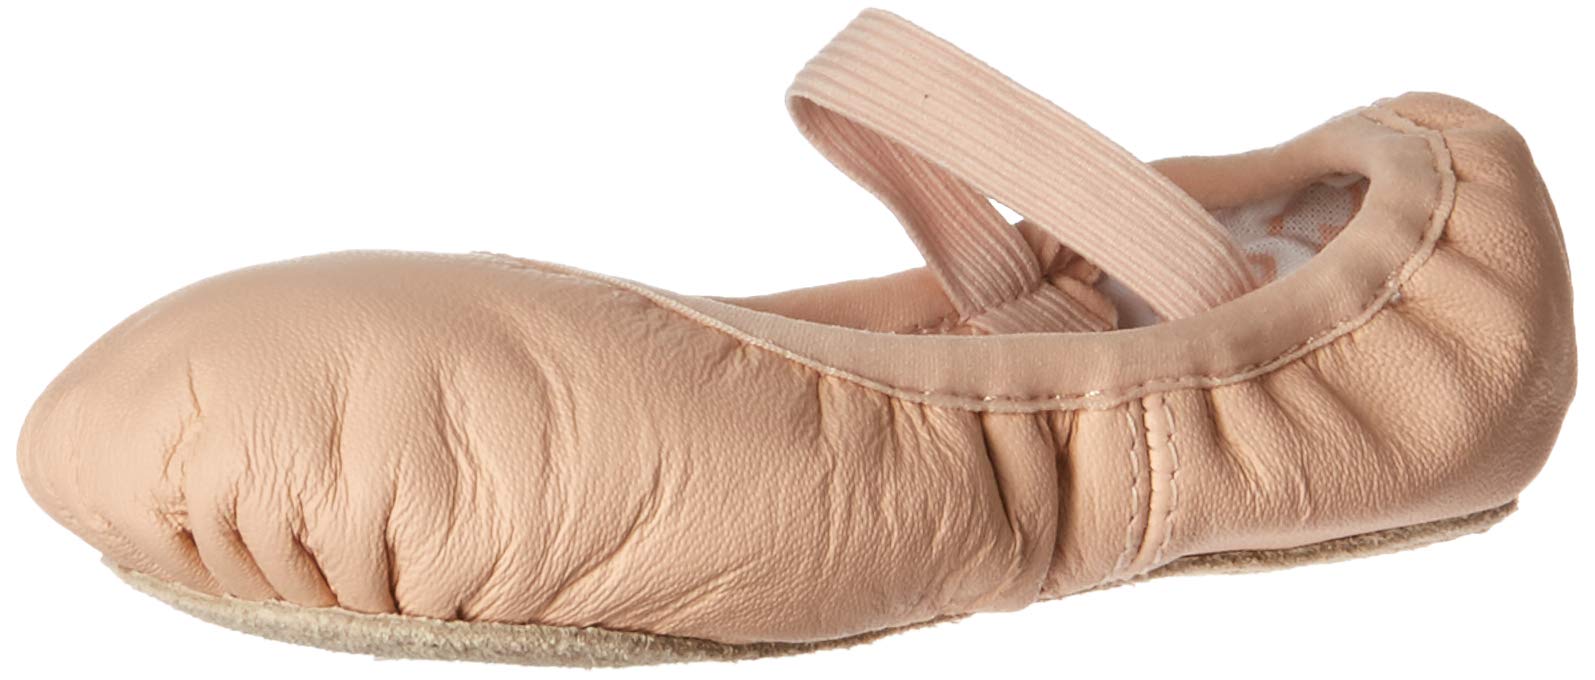 Bloch Unisex-Child Ballet Shoe